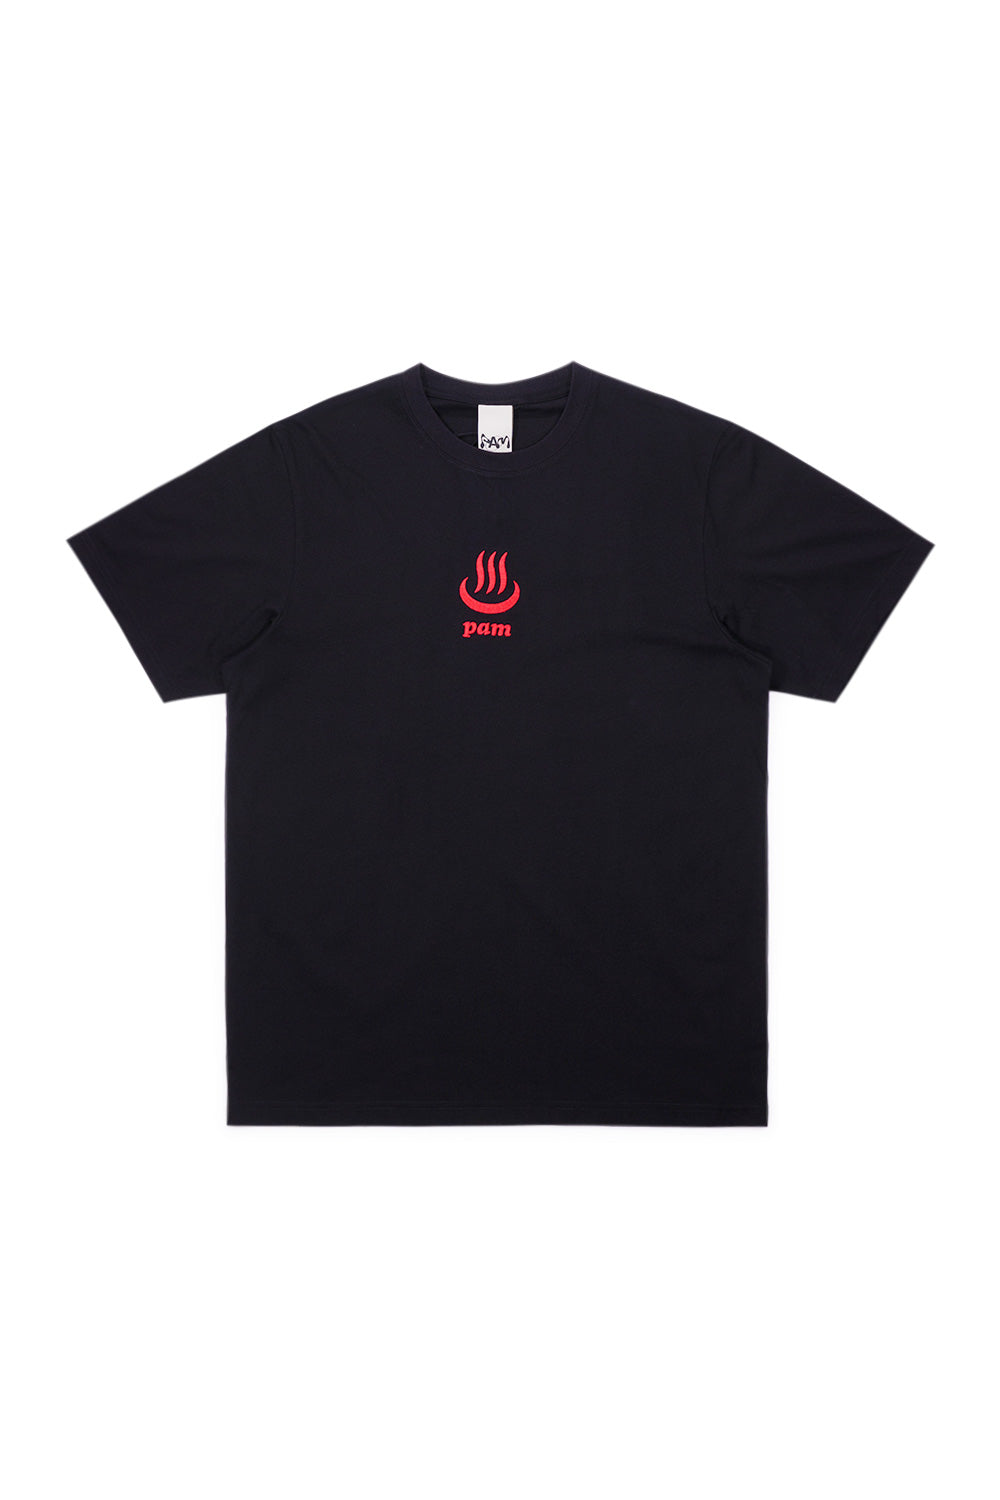 Perks And Mini Onsen T-Shirt Black - BONKERS